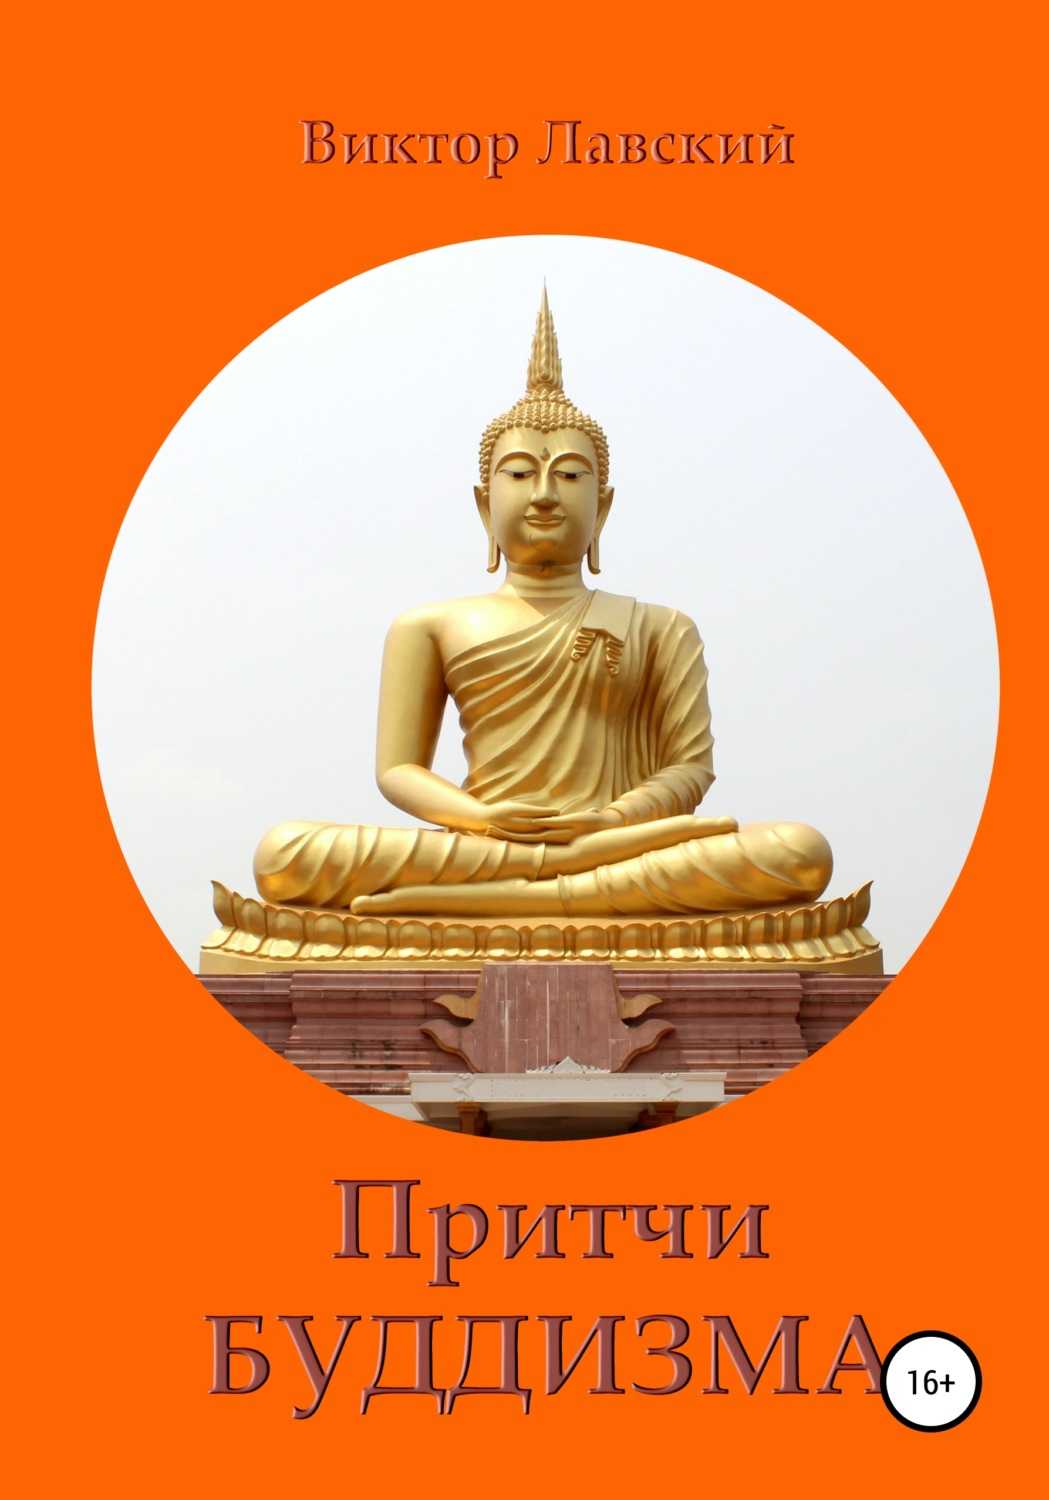 Буддийская притча о терпении и душевном спокойствии